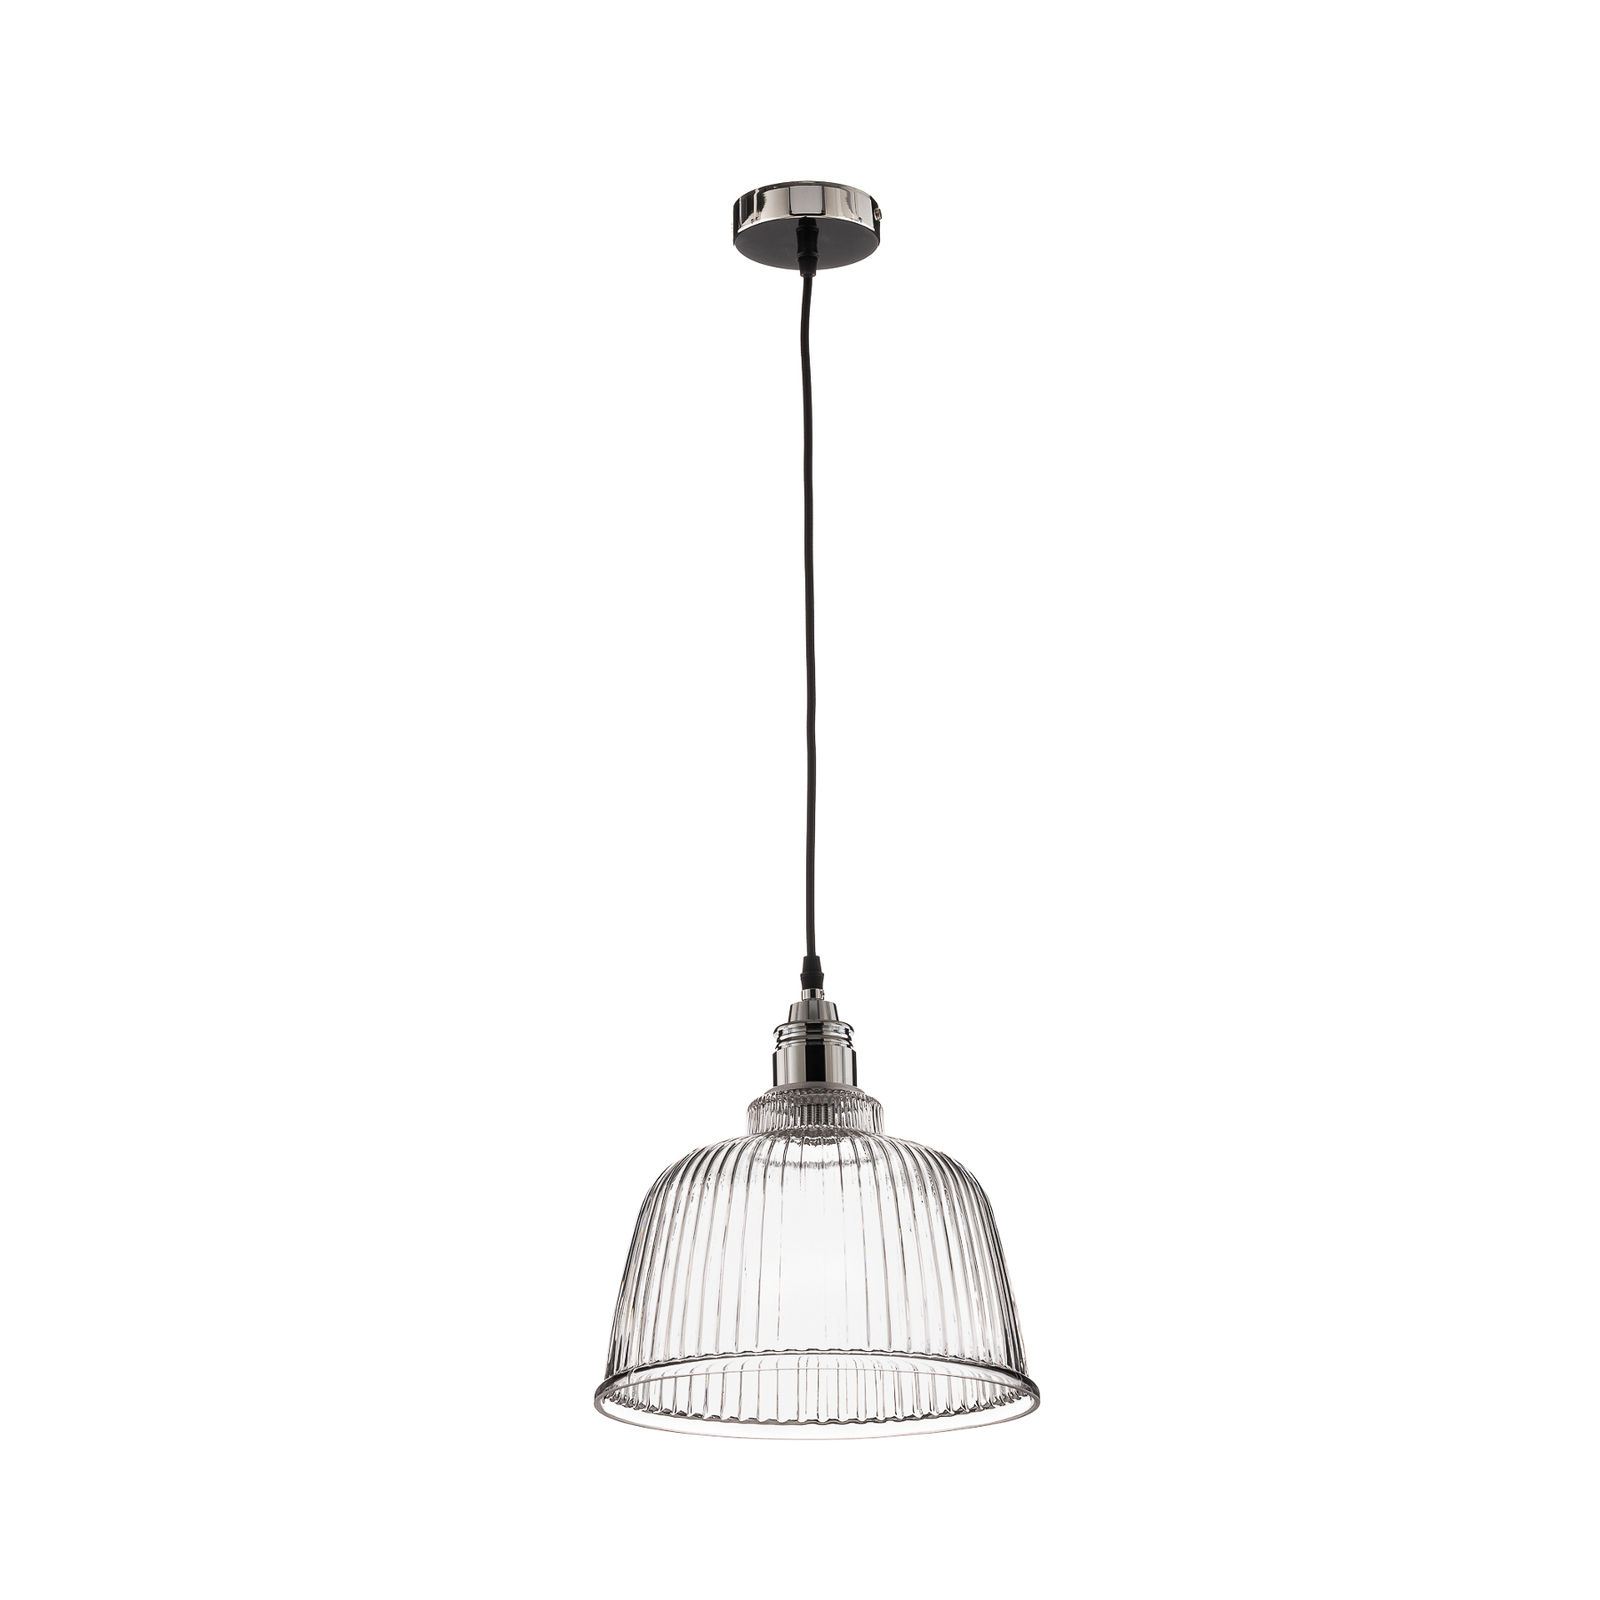 Hanglamp Leana, helder glas, 1-lamp, chroom